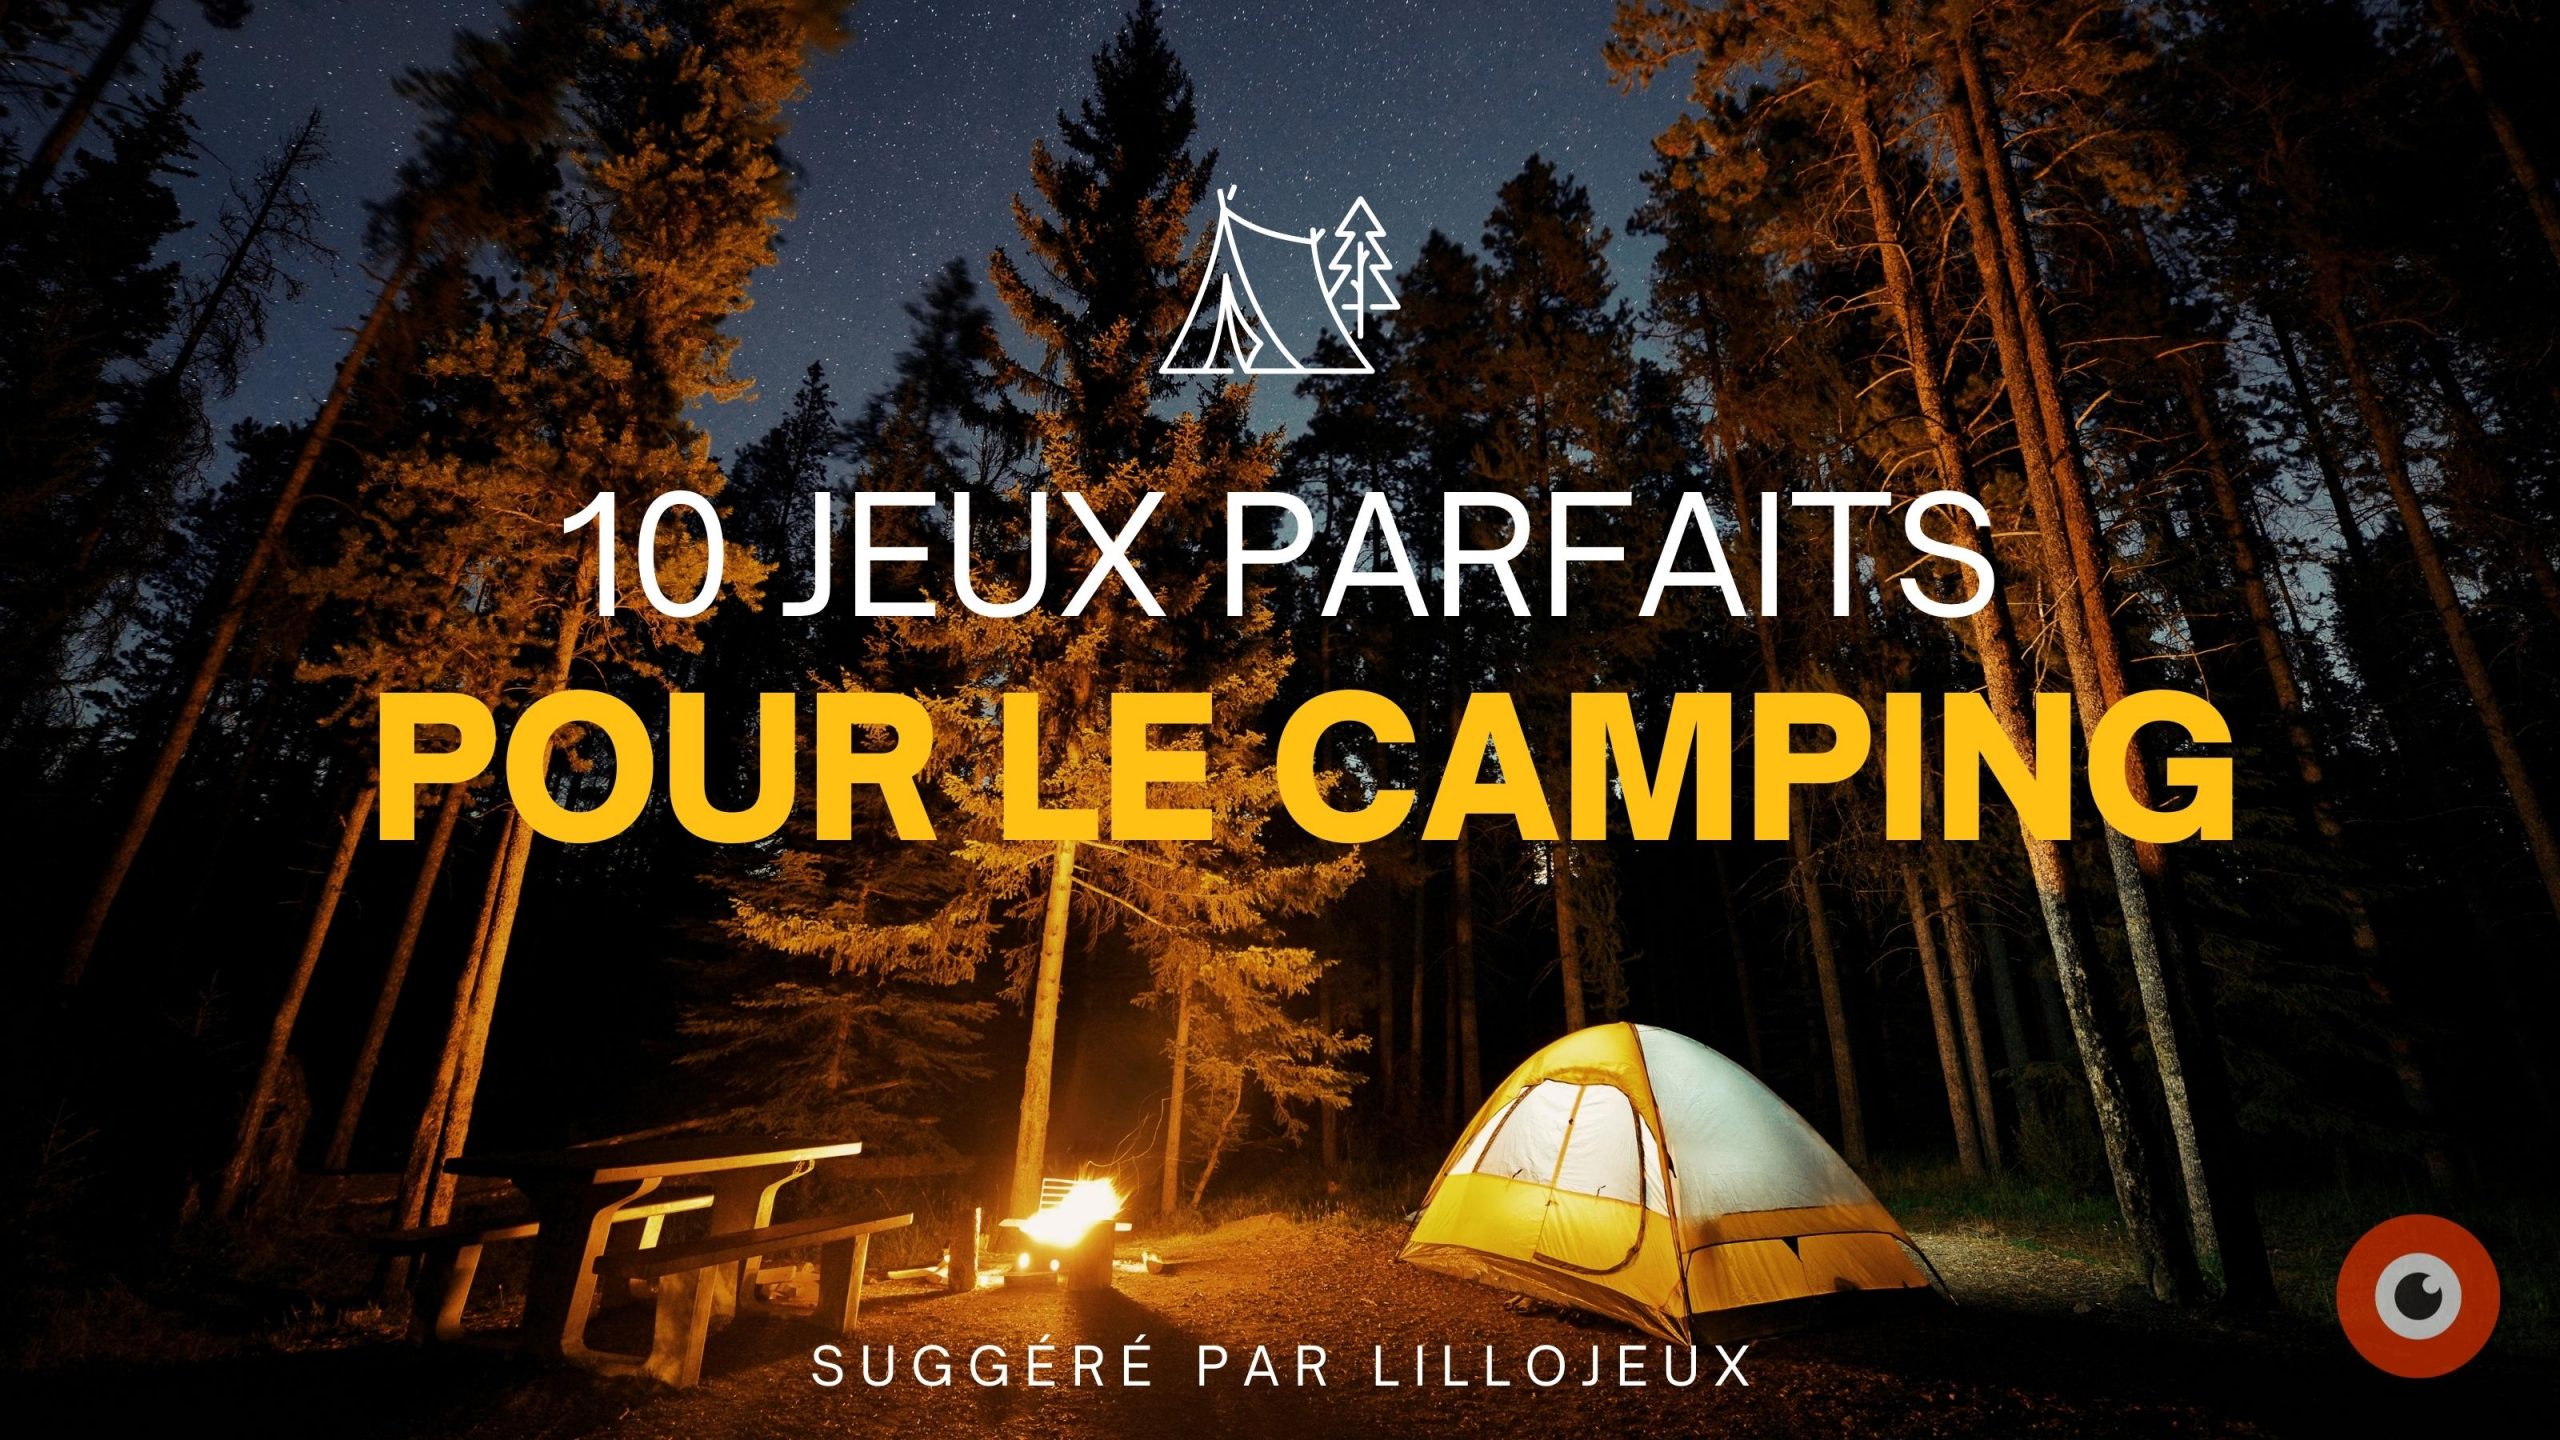 10 jeux parfaits pour le camping ! - LilloJEUX